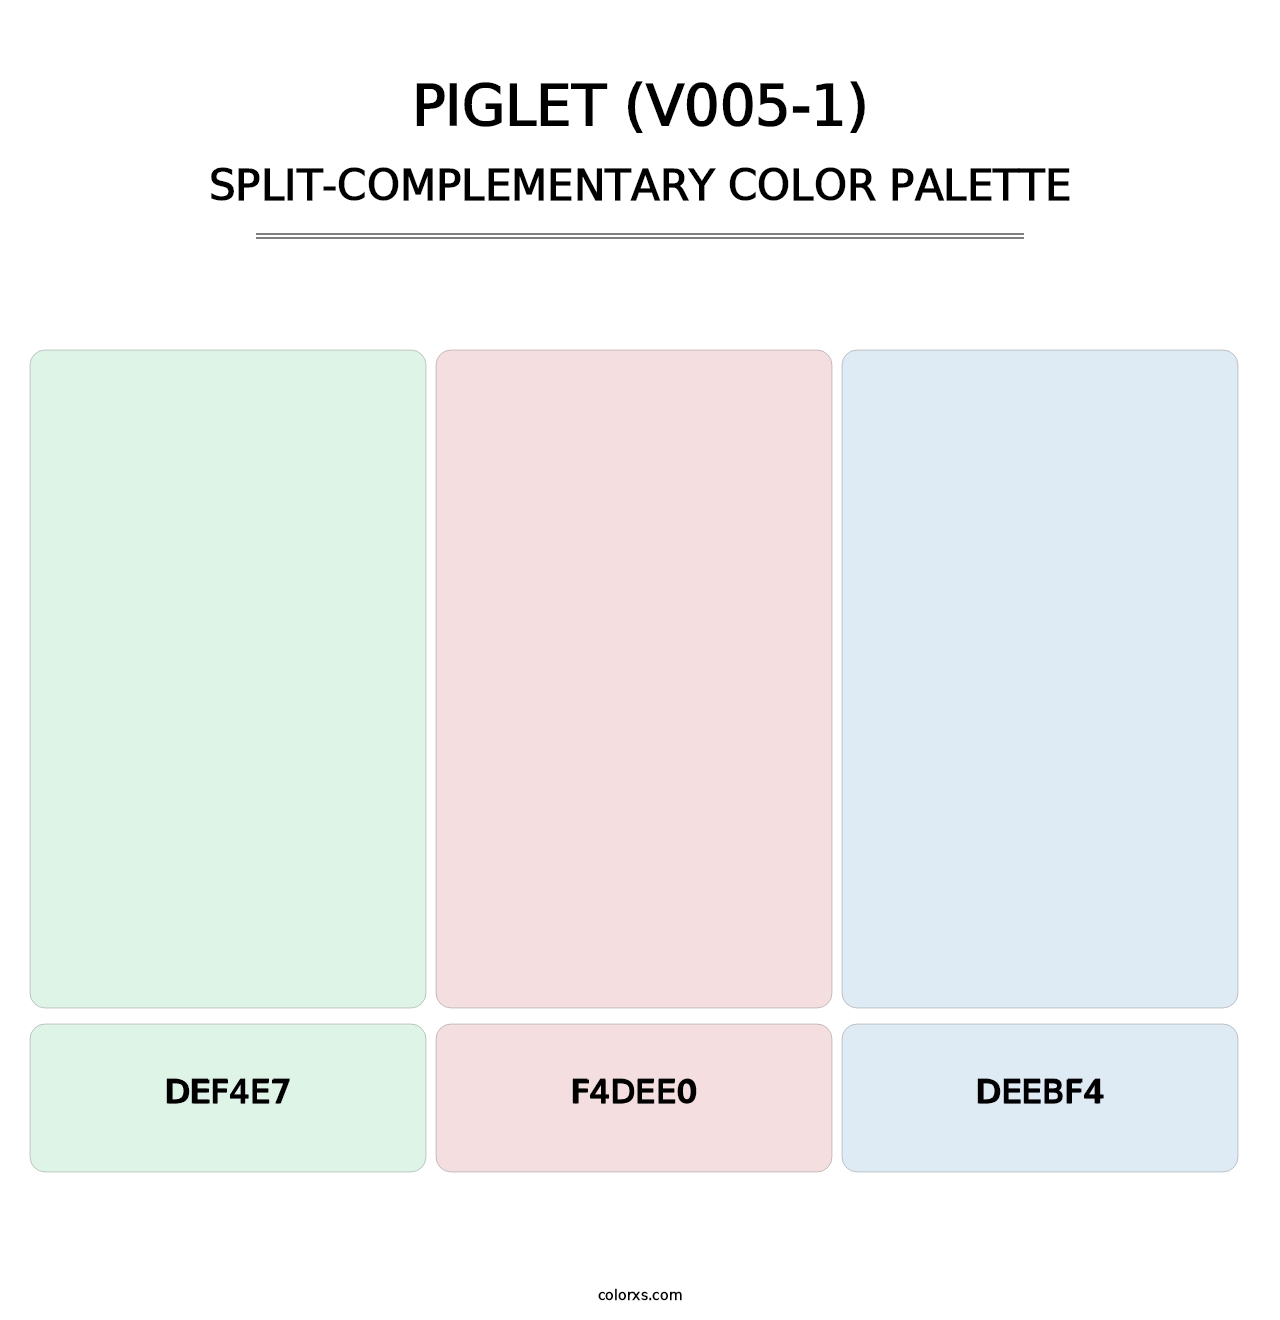 Piglet (V005-1) - Split-Complementary Color Palette